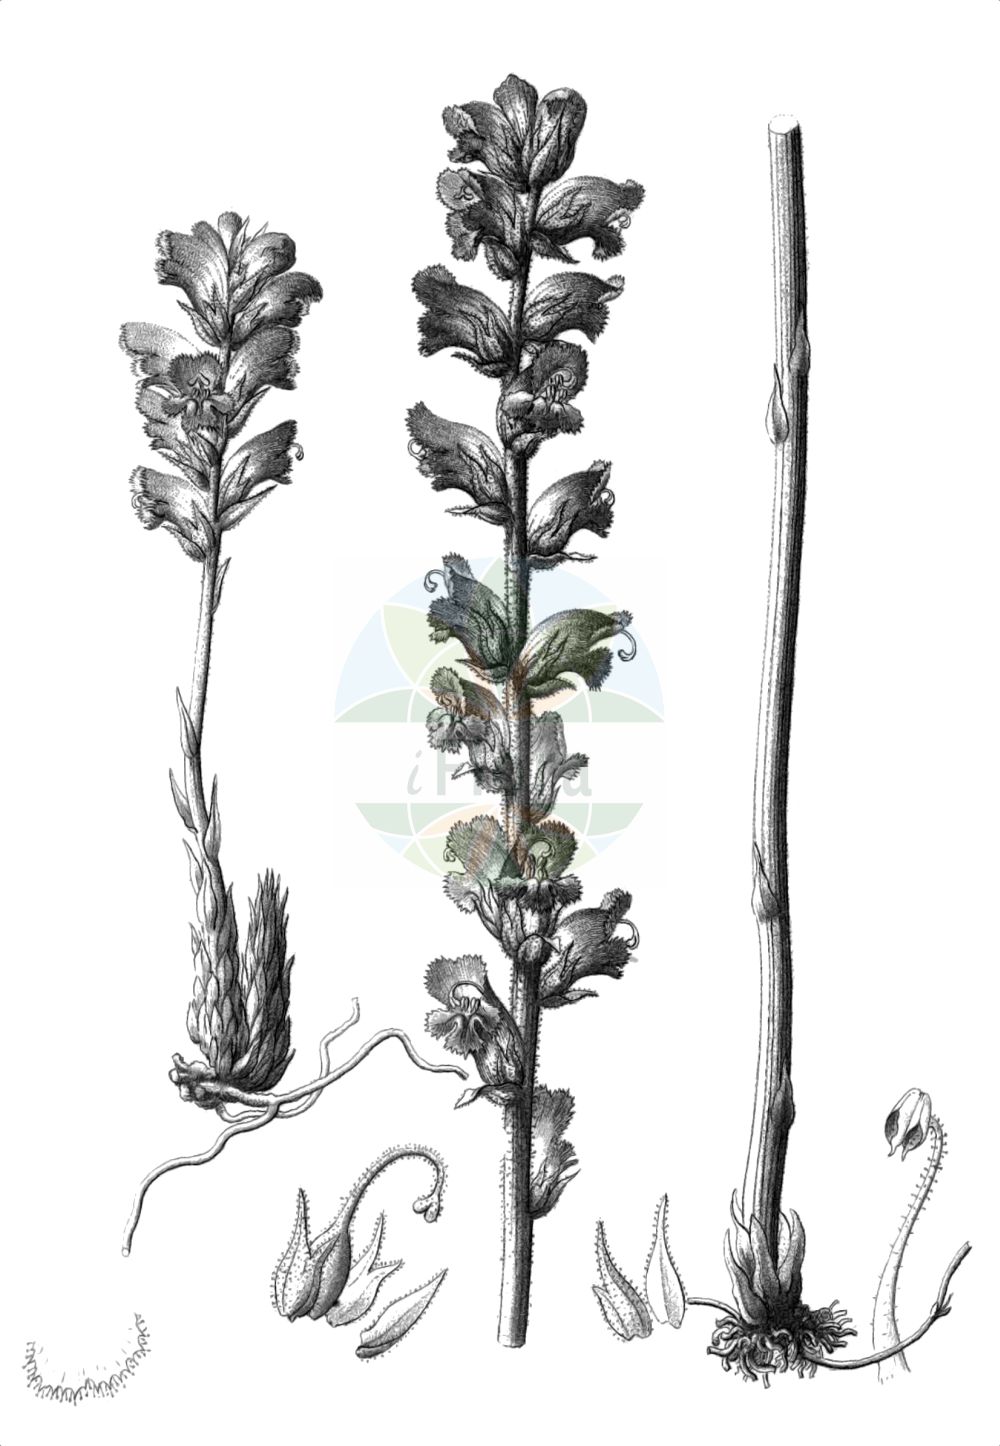 Historische Abbildung von Orobanche gracilis (Blutrote Sommerwurz - Slender Broomrape). Das Bild zeigt Blatt, Bluete, Frucht und Same. ---- Historical Drawing of Orobanche gracilis (Blutrote Sommerwurz - Slender Broomrape). The image is showing leaf, flower, fruit and seed.(Orobanche gracilis,Blutrote Sommerwurz,Slender Broomrape,Orobanche austrohispanica,Orobanche breviflora,Orobanche cruenta,Orobanche gracilis,Orobanche grandiuscula,Orobanche spruneri,Orobanche tetuanensis,Orobanche todaroi,Blutrote Sommerwurz,Zierliche Sommerwurz,Slender Broomrape,Orobanche,Sommerwurz,Broomrape,Orobanchaceae,Sommerwurzgewächse,Broomrape family,Blatt,Bluete,Frucht,Same,leaf,flower,fruit,seed,Reichenbach (1823-1832))